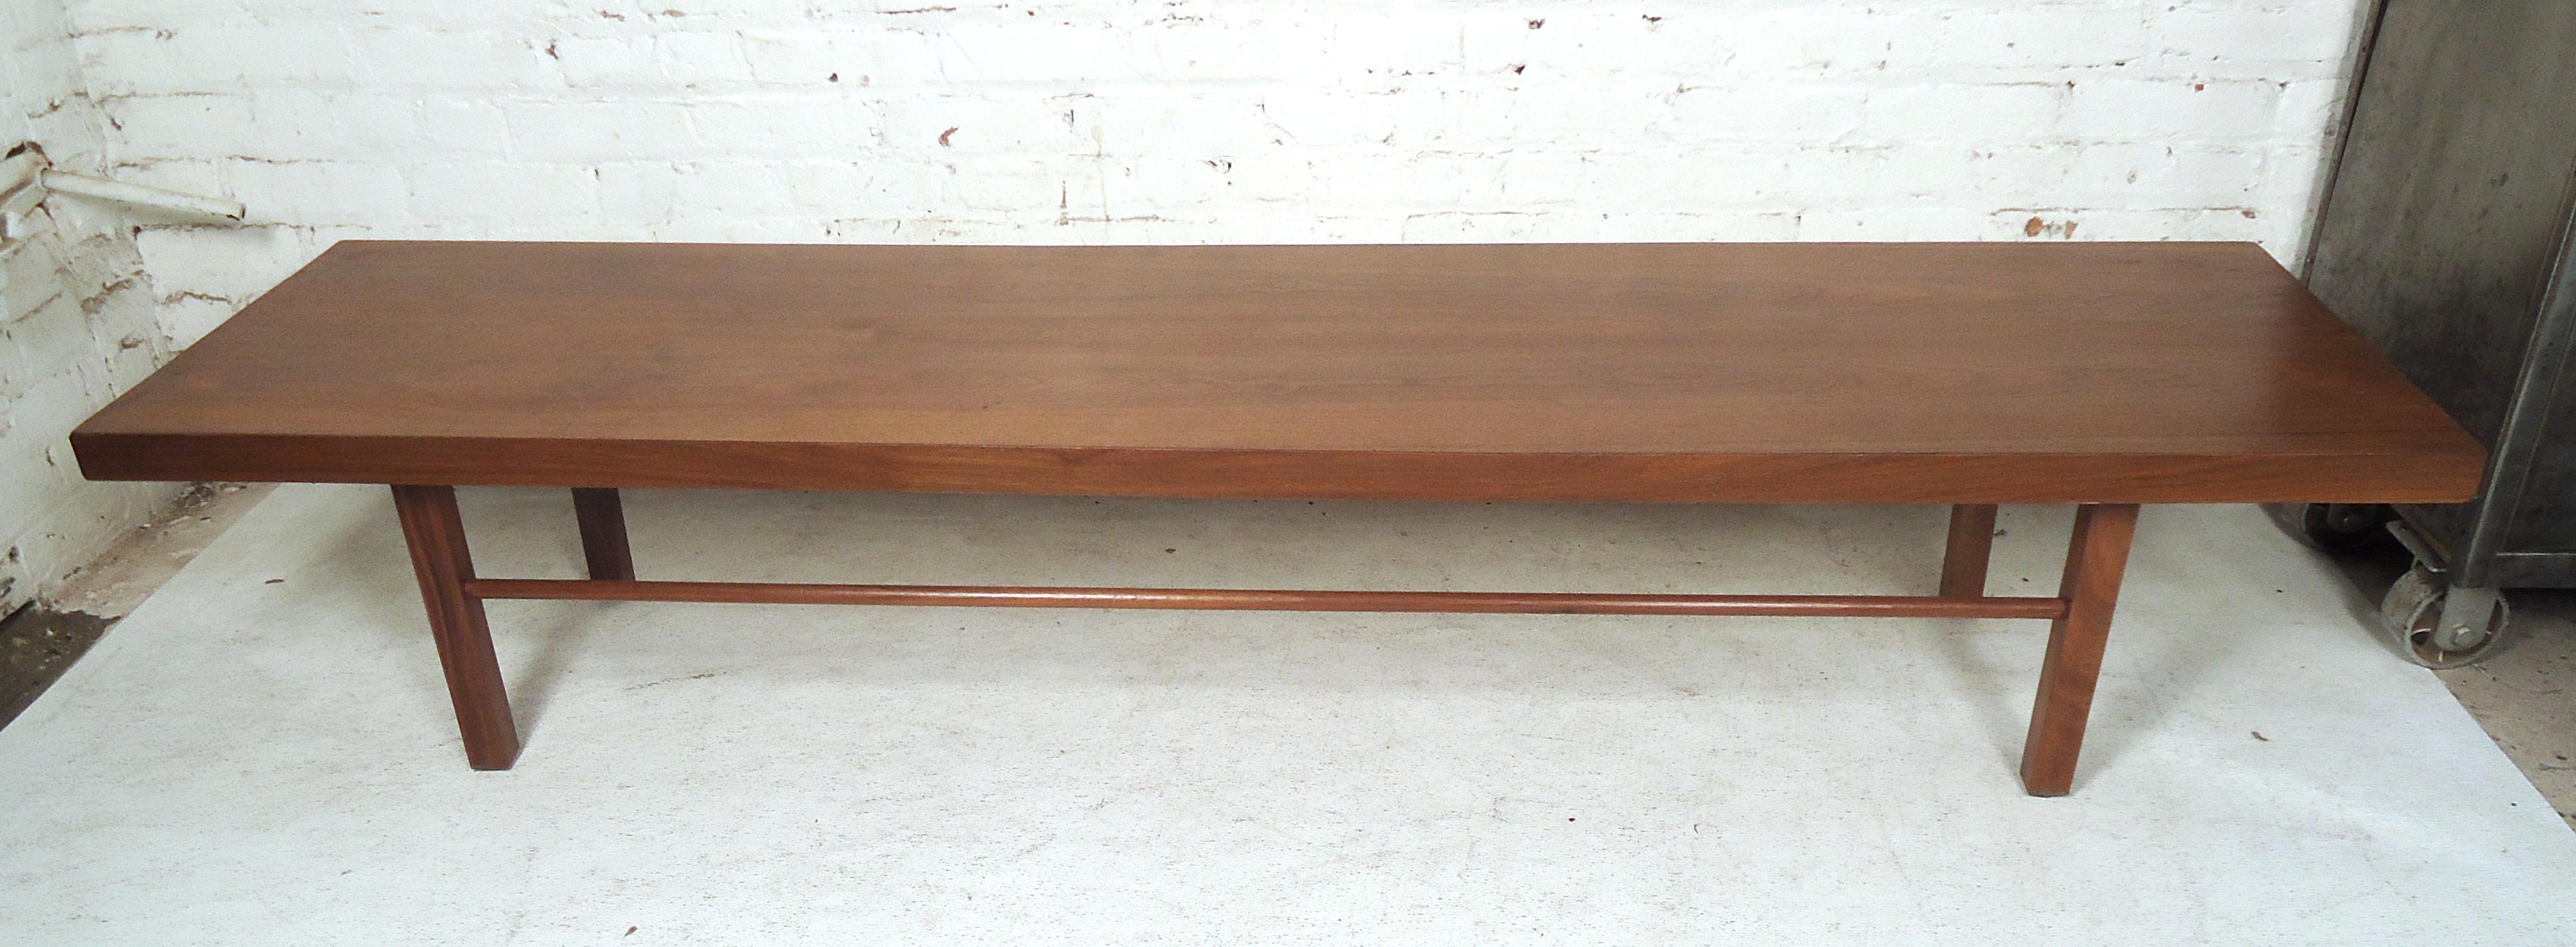 Superbe table basse moderne du milieu du siècle, avec un riche grain de noyer sur un ensemble de pieds robustes.

(Veuillez confirmer l'emplacement de l'article - NY ou NJ - avec le concessionnaire).